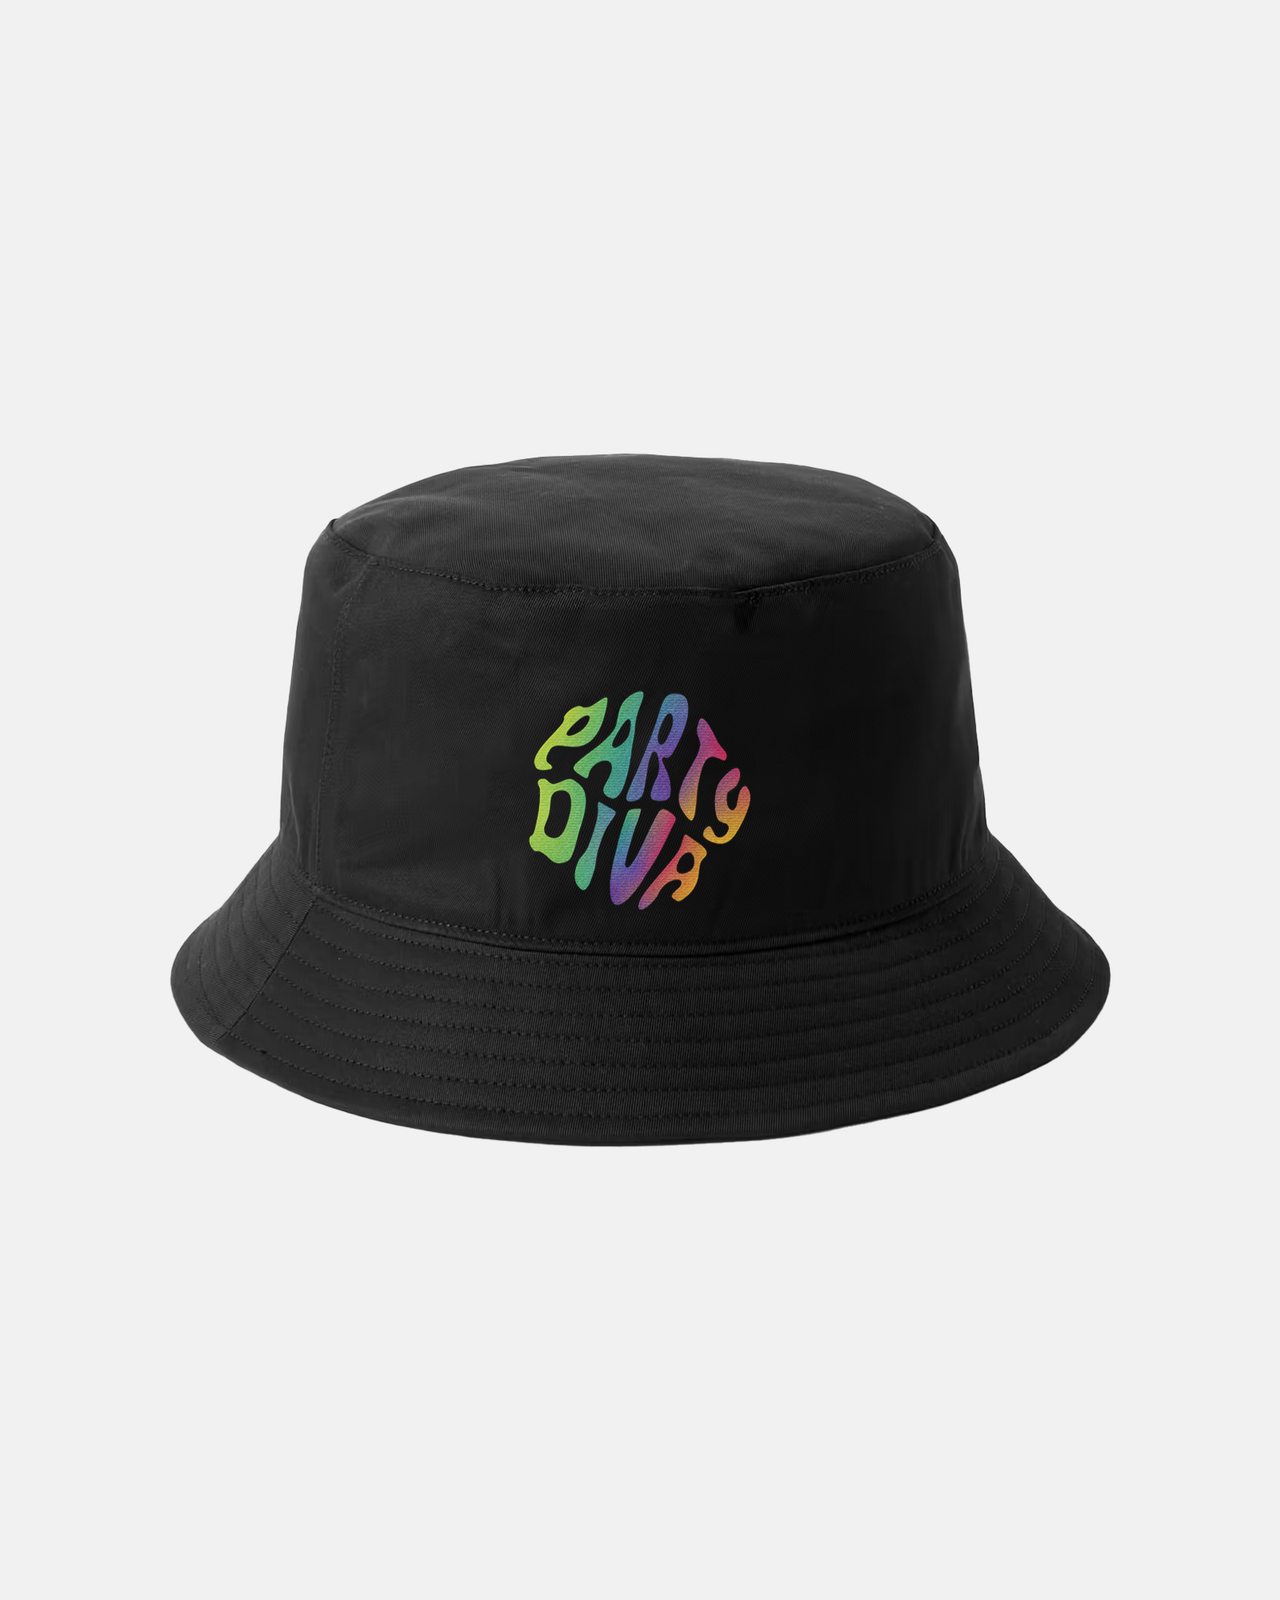 Party Diva Gradient Bucket Hats